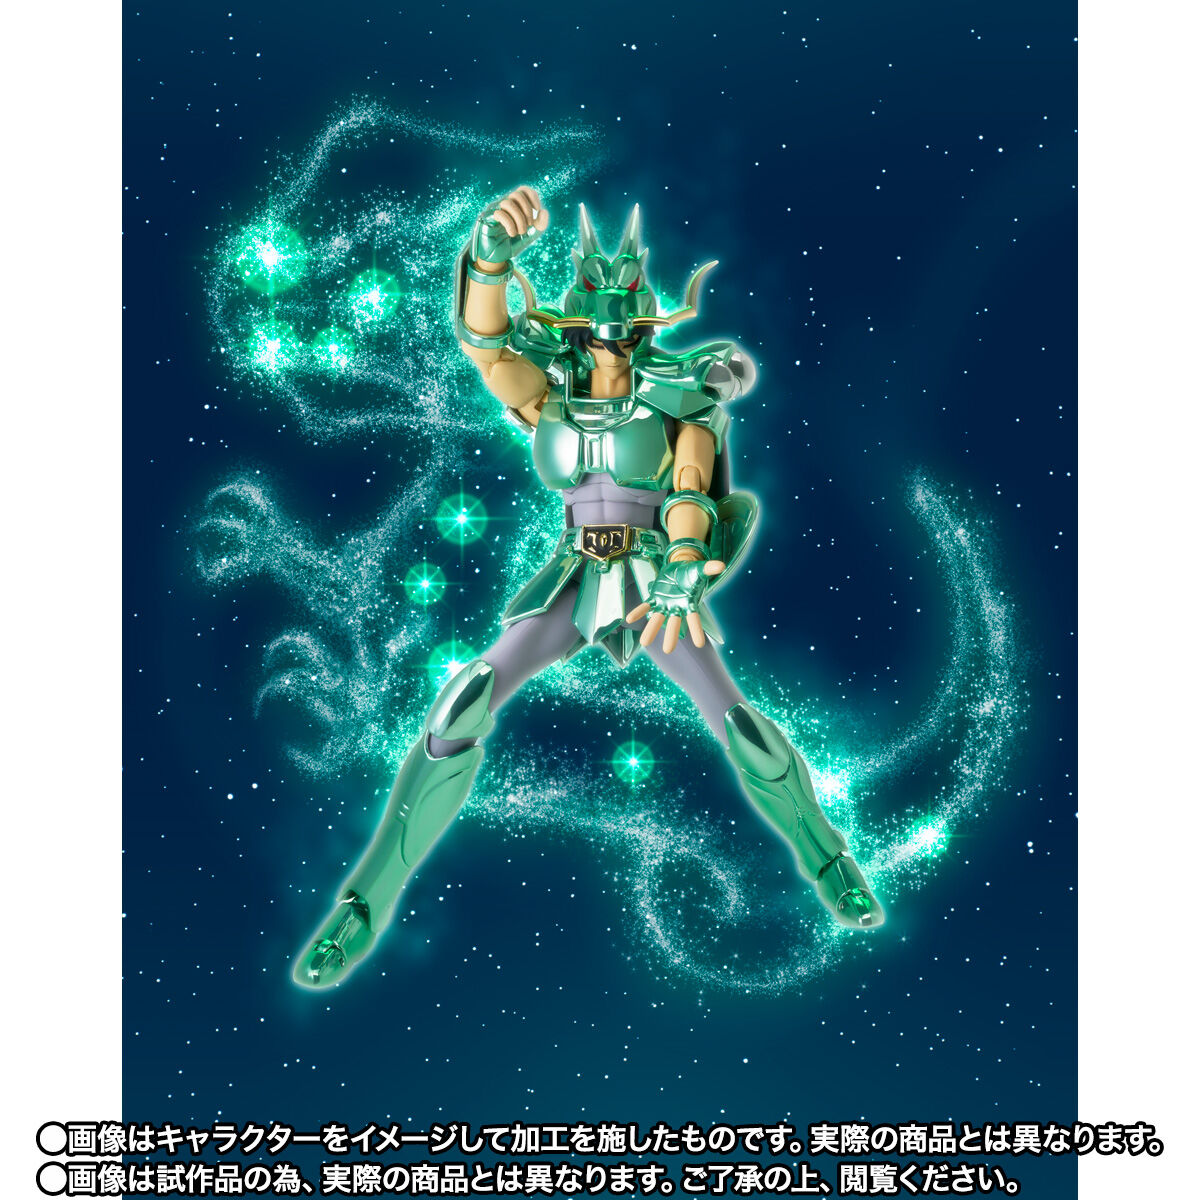 「聖闘士聖衣神話 ドラゴン紫龍（初期青銅聖衣）20th Anniversary Ver.」のフィギュア画像